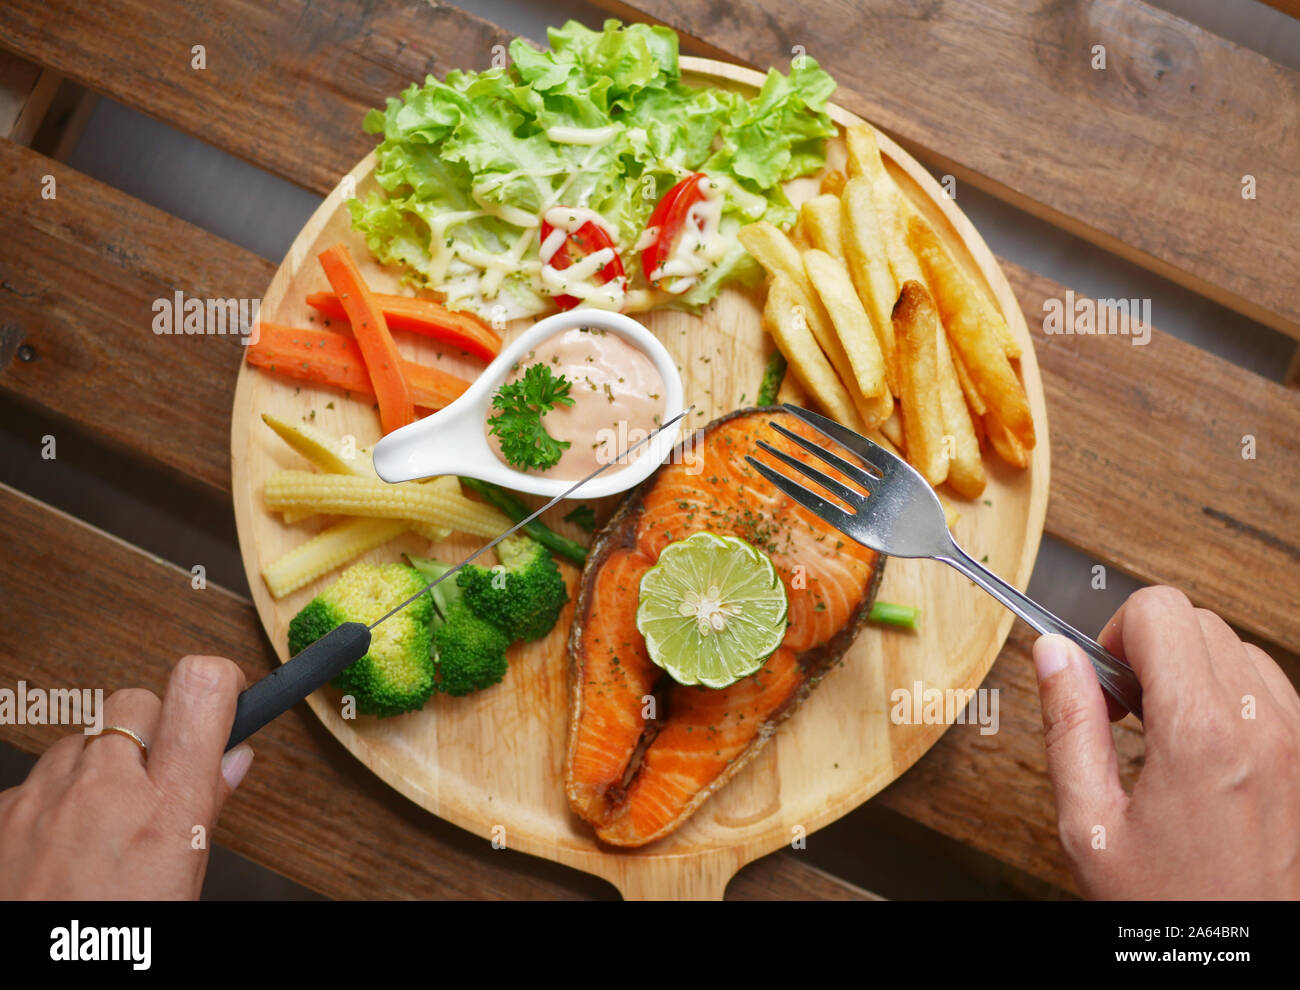 Lachs Steak serviert auf Holzplatte, Beilagen, gekochtes Gemüse, Pommes frites, Salat, Sauce und einem Stück Zitrone auf der Oberseite Stockfoto